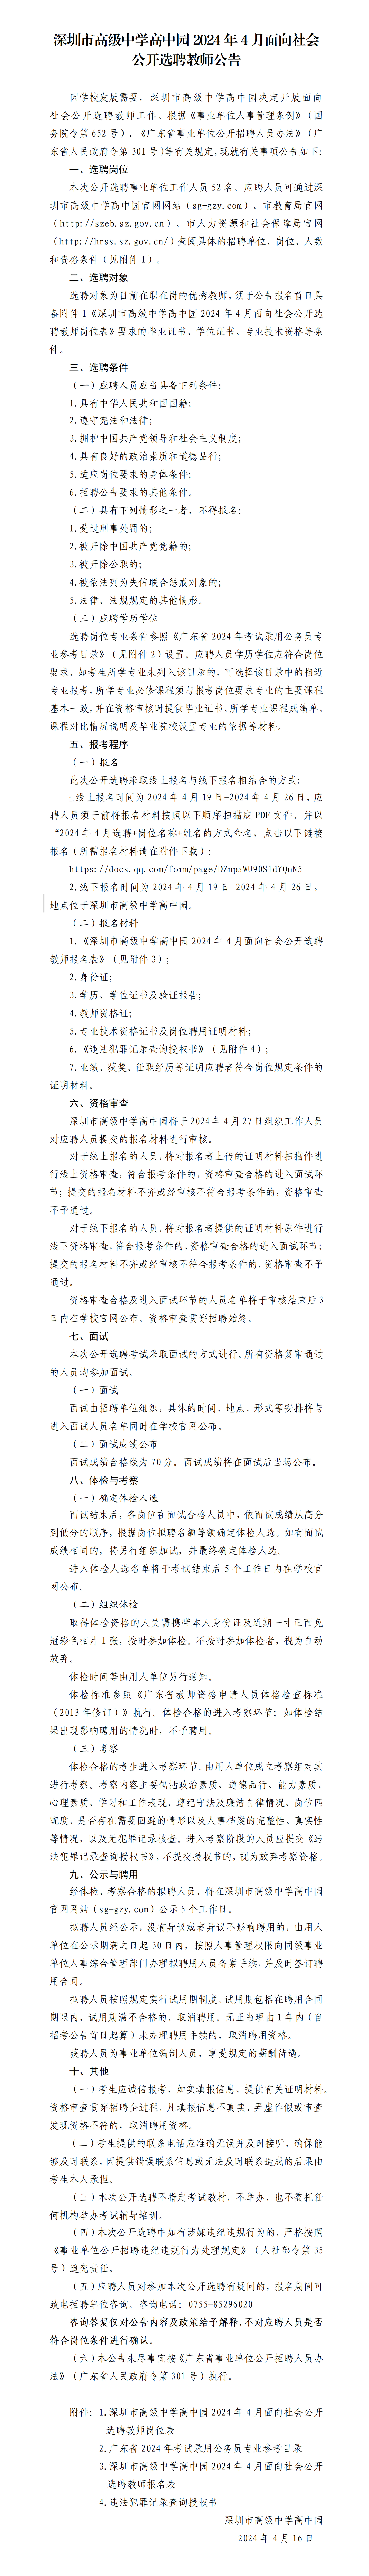 正文-深圳市高级中学高中园2024年4月公开选聘教师公告_01(2).png